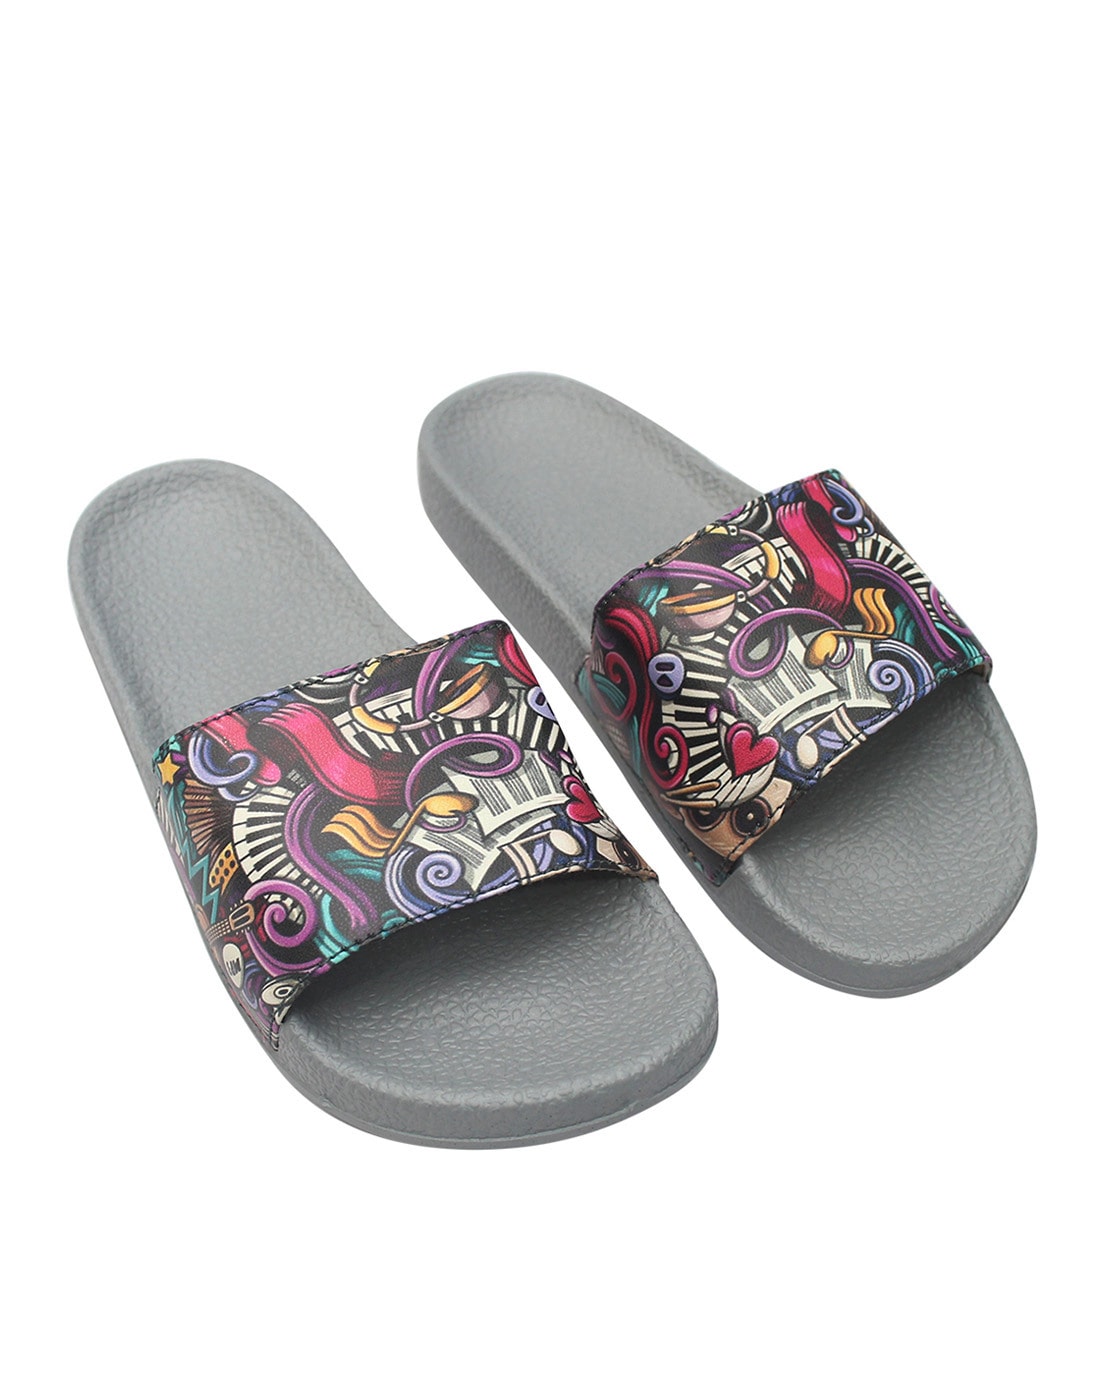 Perphy Open Toe Ankle Strap Kitten Heel Sandals for Women - Walmart.com